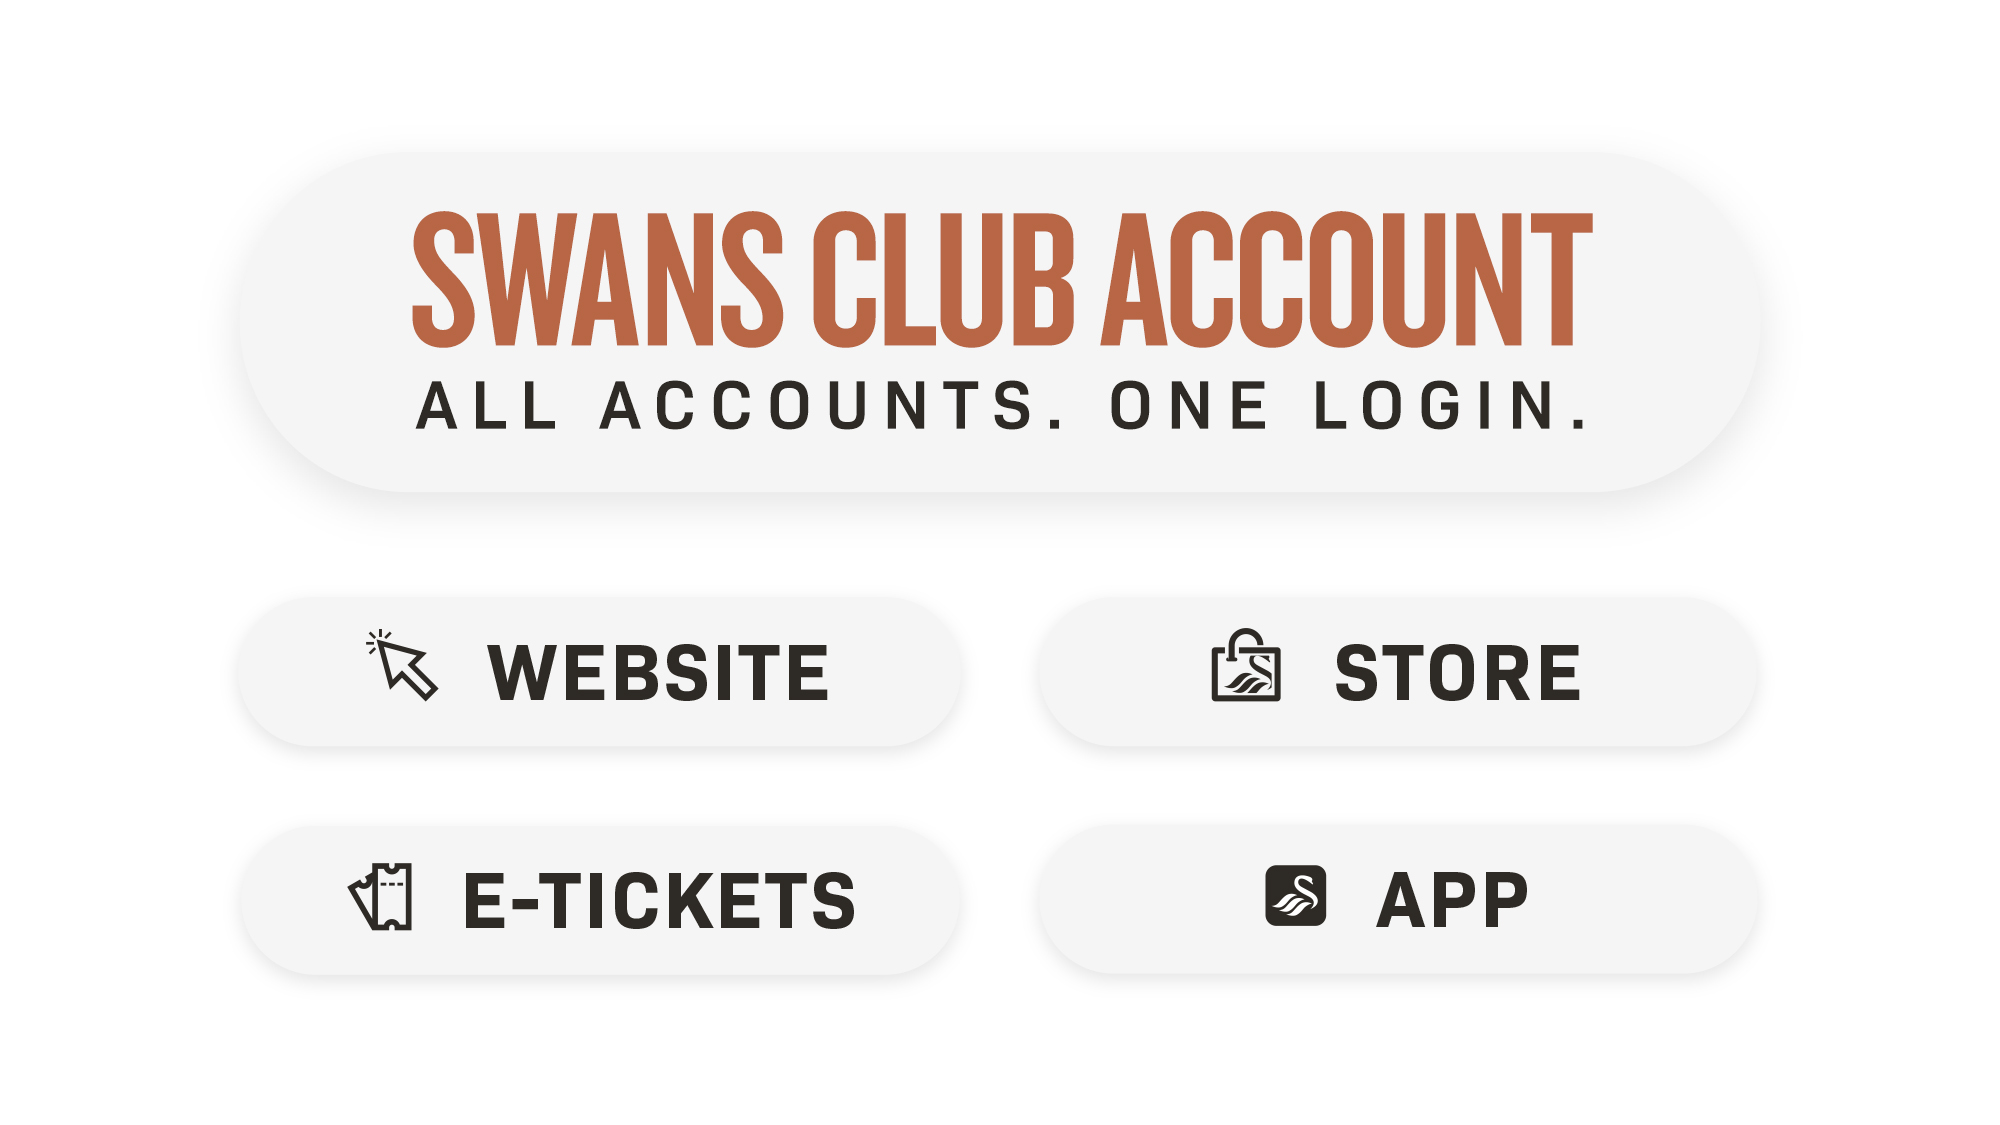 Swans Club Account